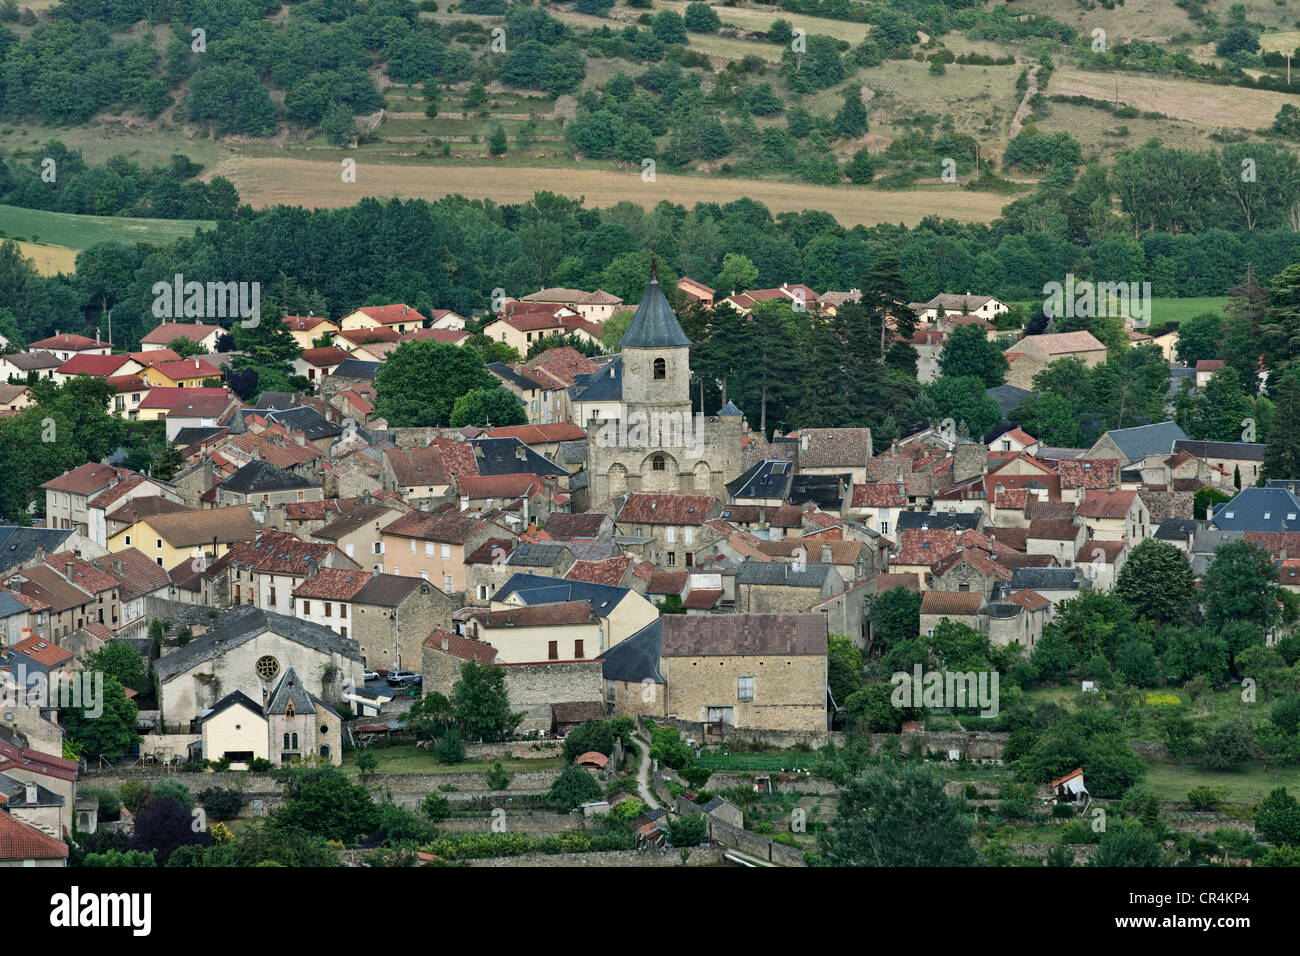 Nant village, vallée de la Dourbie, Parc Naturel Régional des Grands Causses, UNESCO World Heritage, Aveyron, France, Europe Banque D'Images